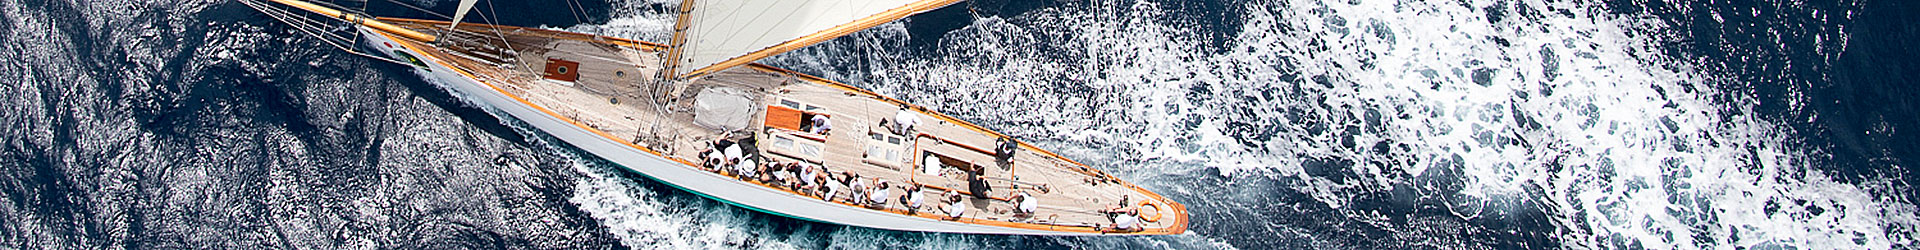 sito ufficiale della regata | Rolex Giraglia risultati | Giraglia classifica | YCI Genova